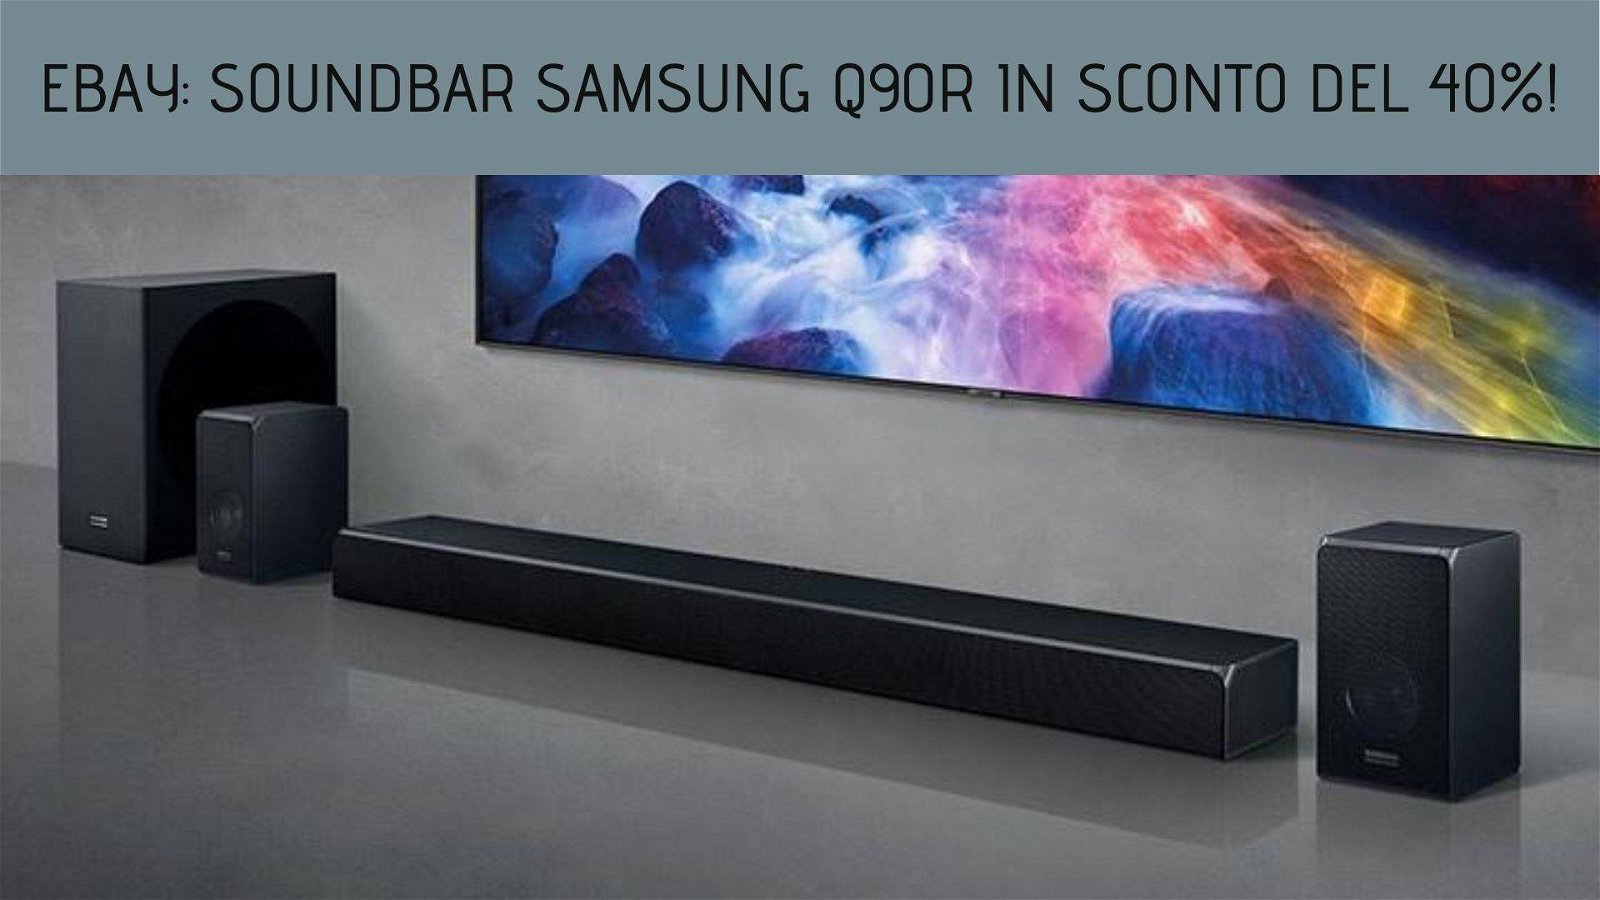 Immagine di eBay: soundbar Samsung Q90R in sconto del 40%!